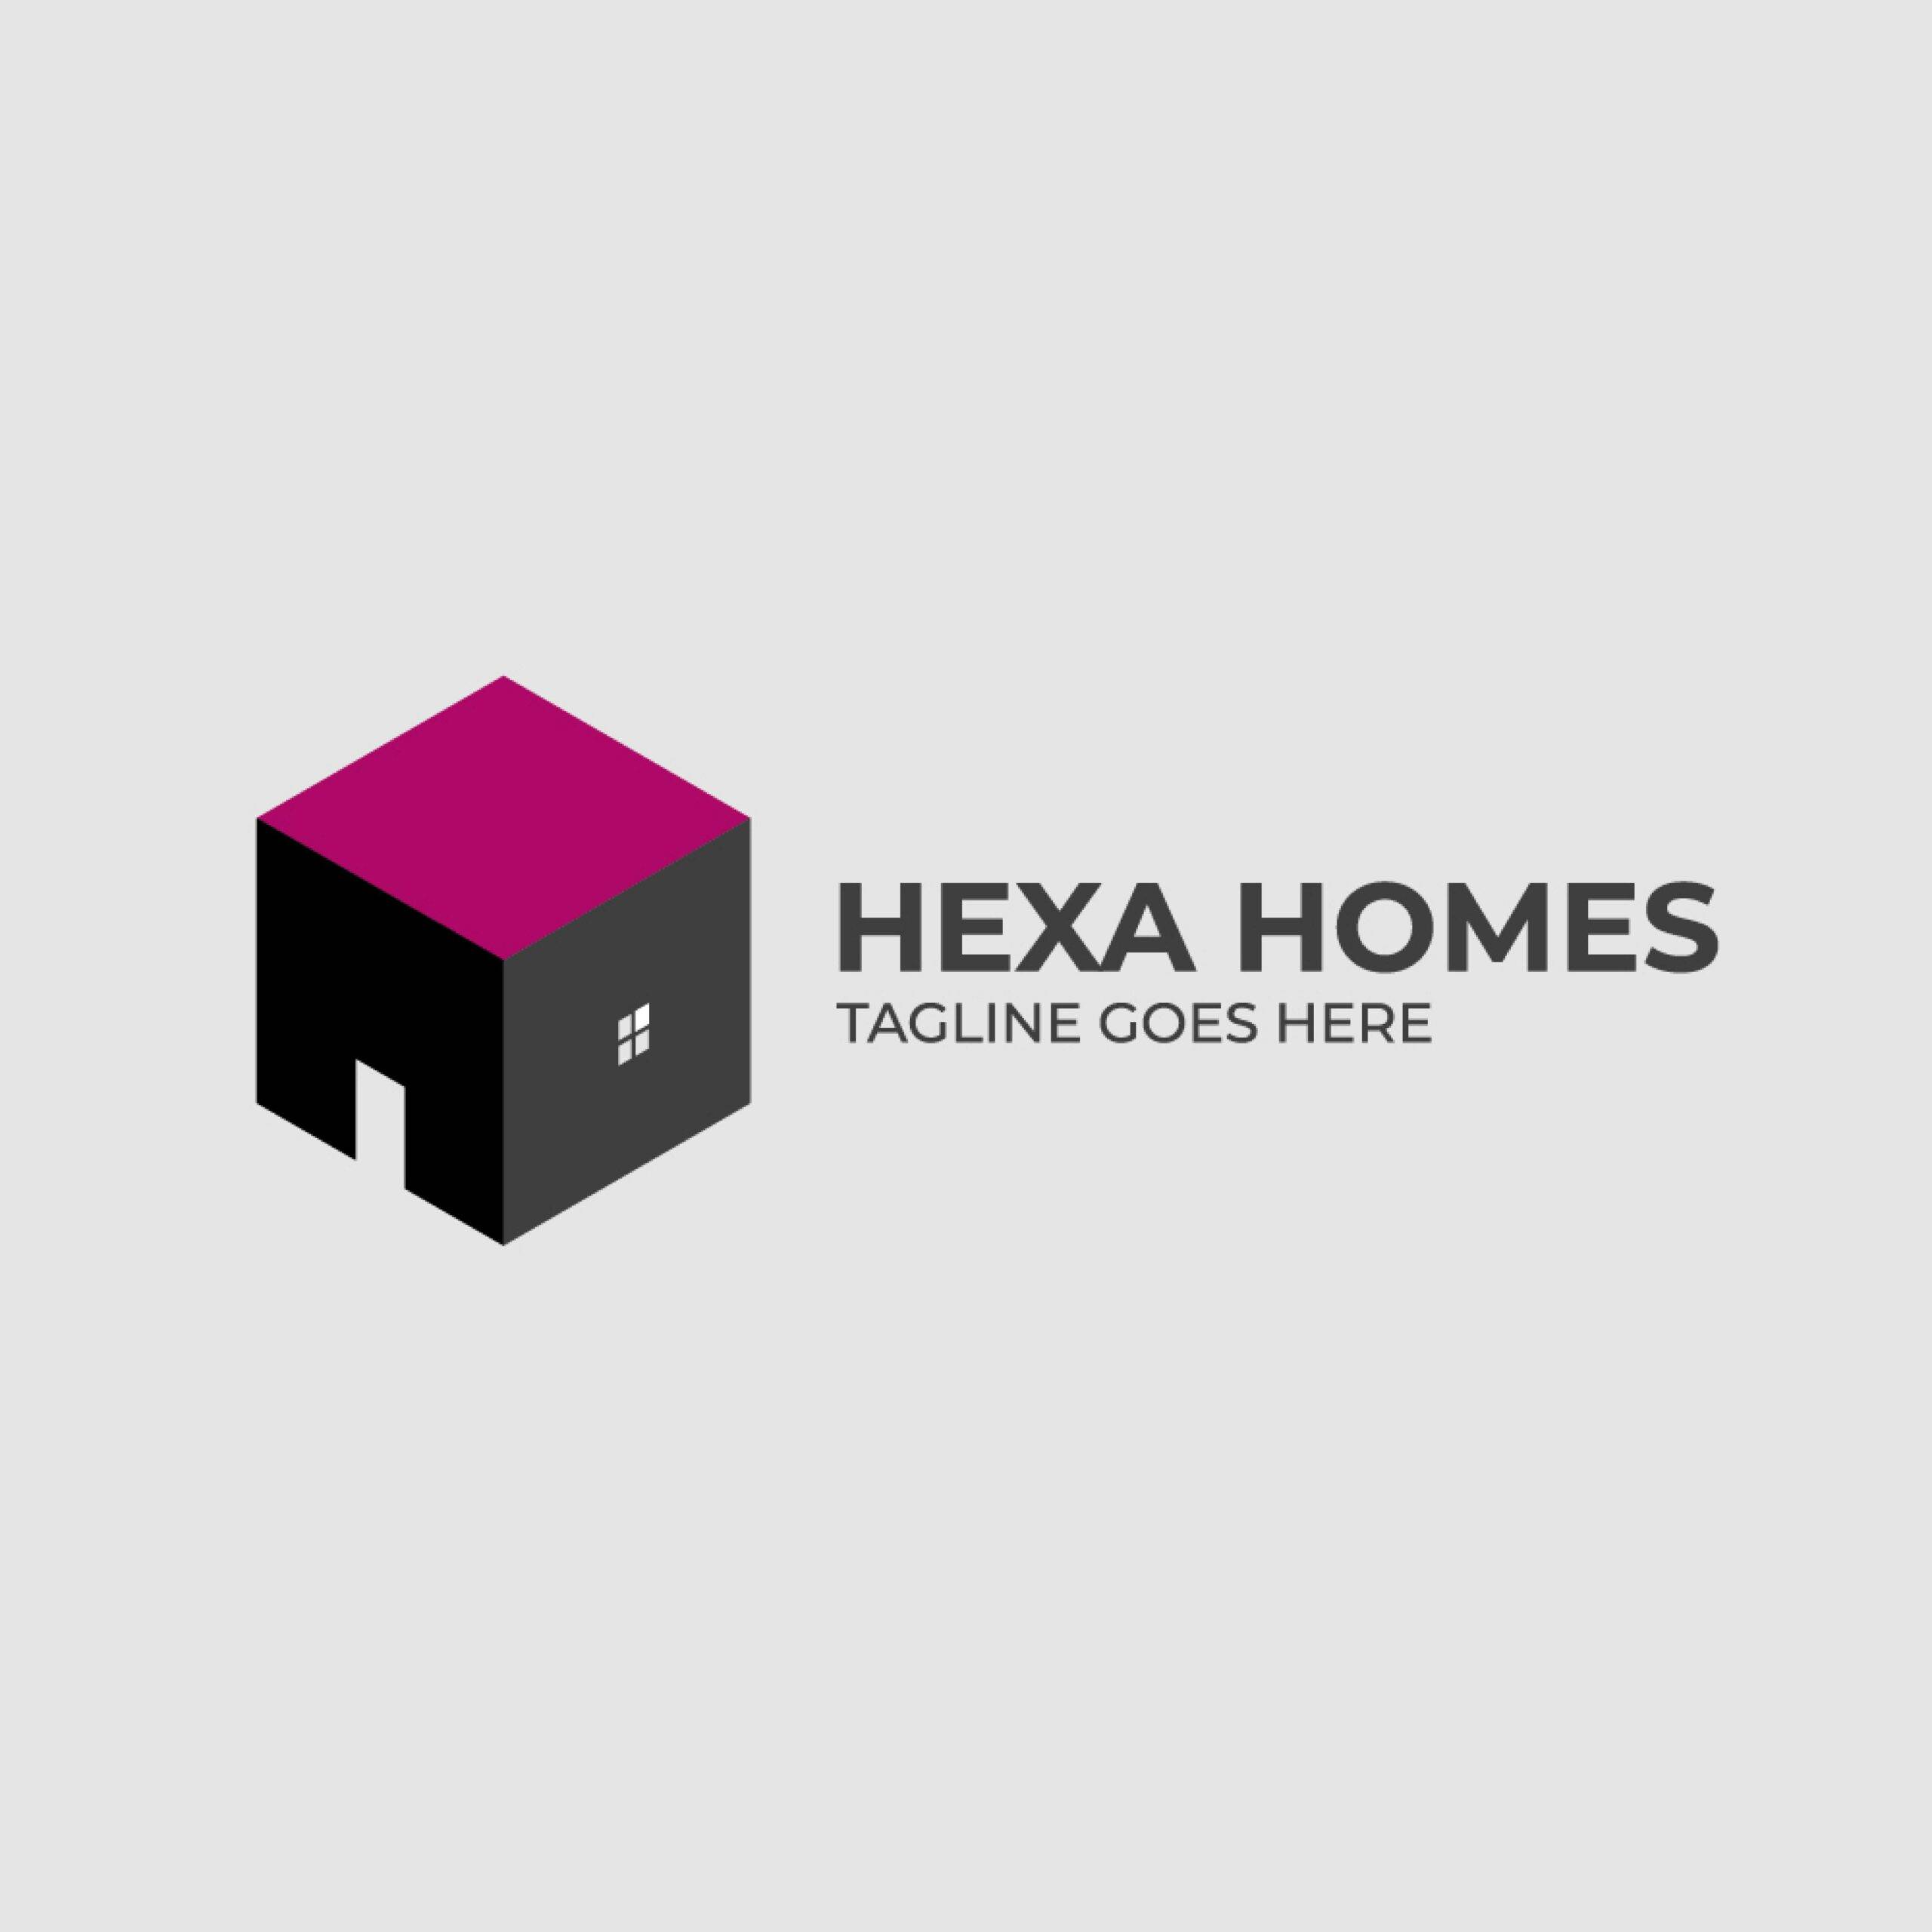 Hexa home real estate logo design